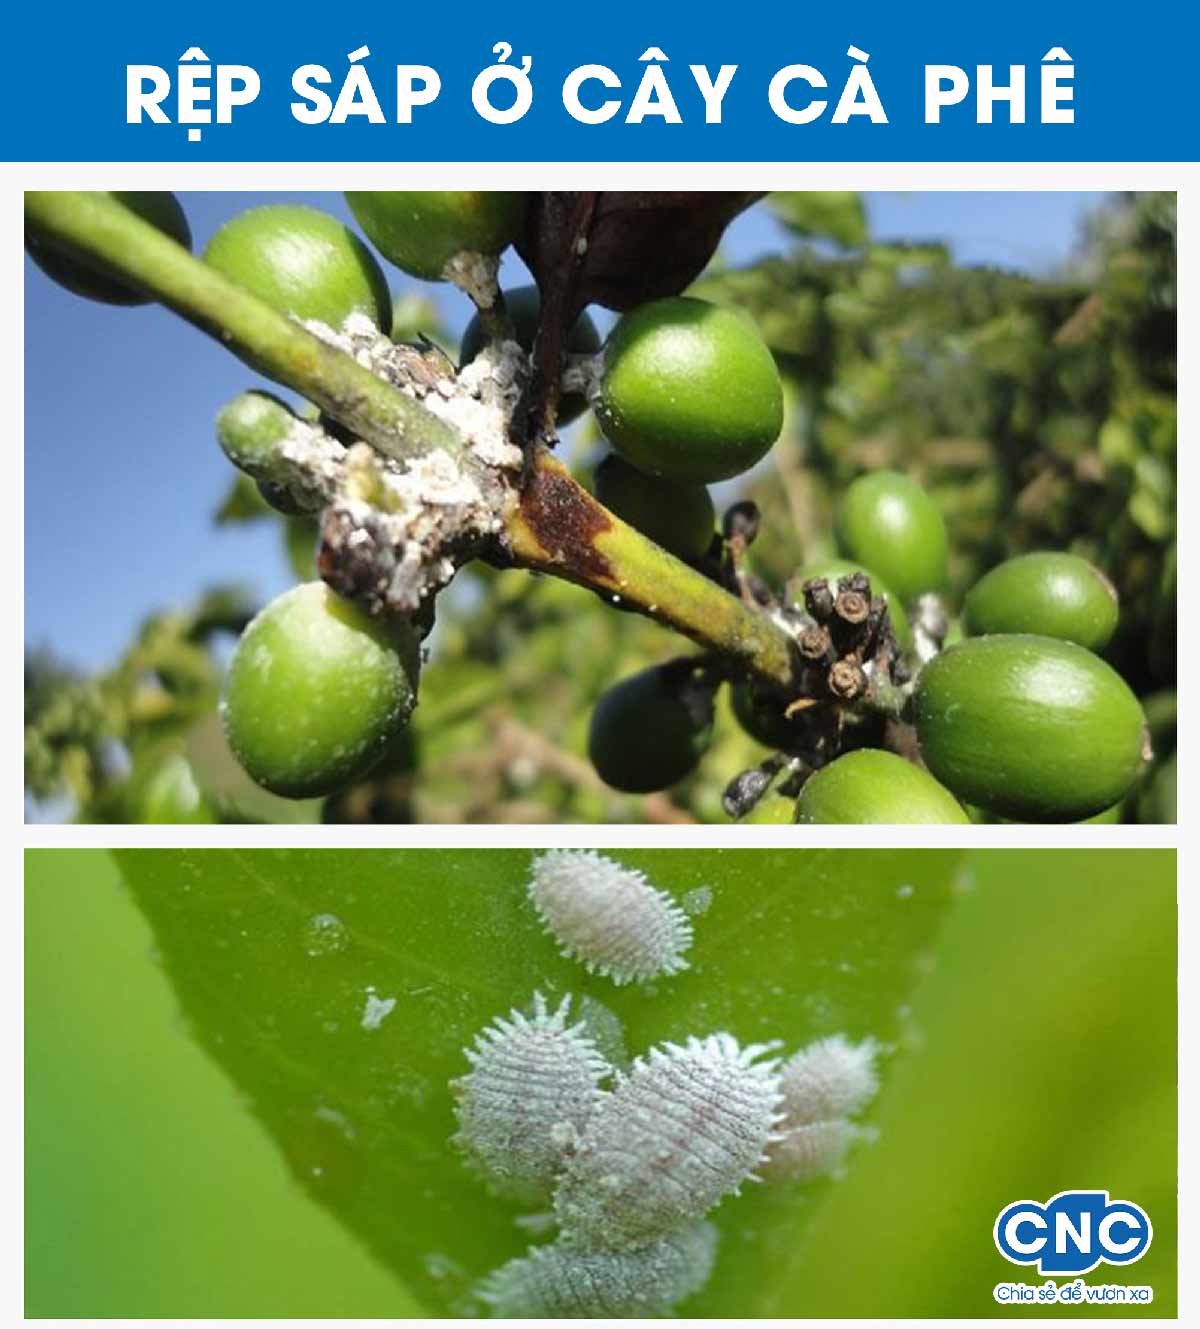 Rệp sáp ở cây cà phê - Hướng dẫn nhận biết rệp sáp trên cây cà phê và trị rệp sáp bằng sinh học hiệu quả